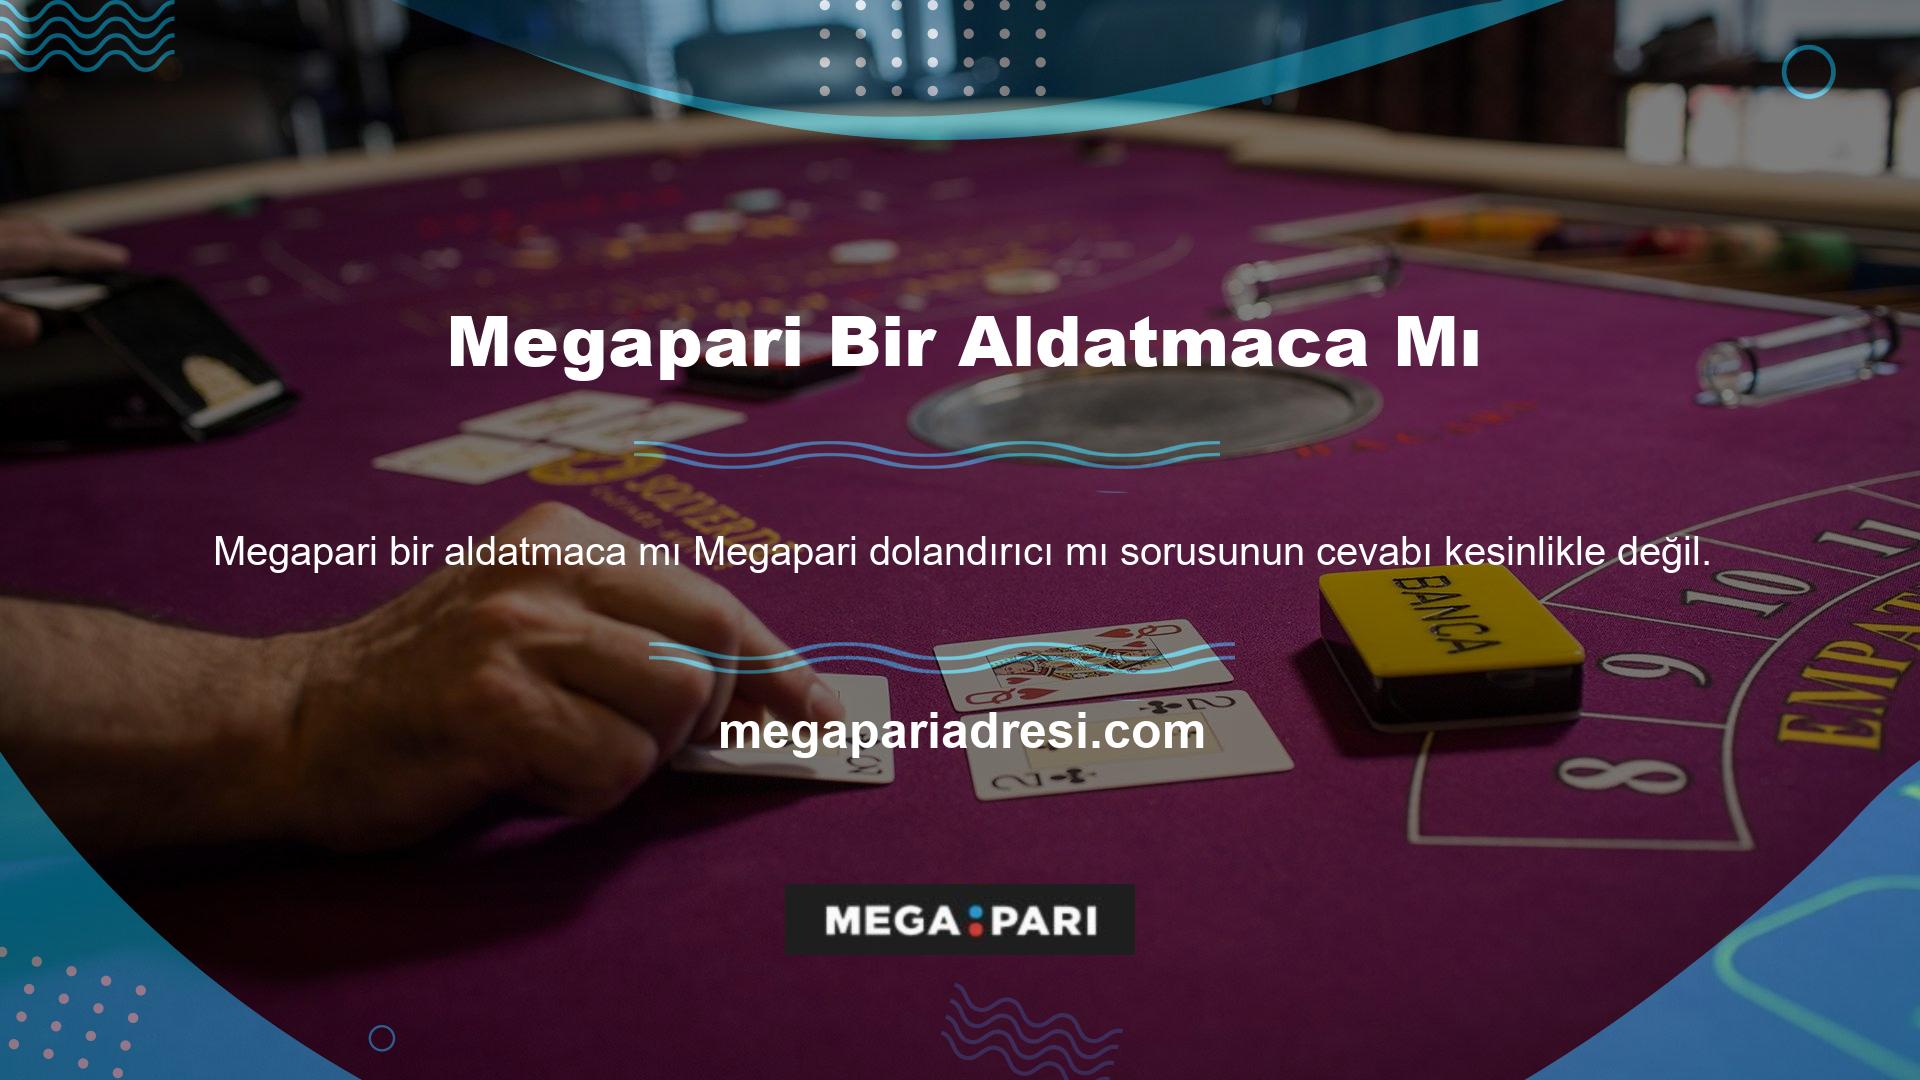 Megapari oyun sitesi lisanslı olmak için tüm gereklilikleri karşılıyor ve lisanslı Türk oyun tutkunlarına hizmet veriyor